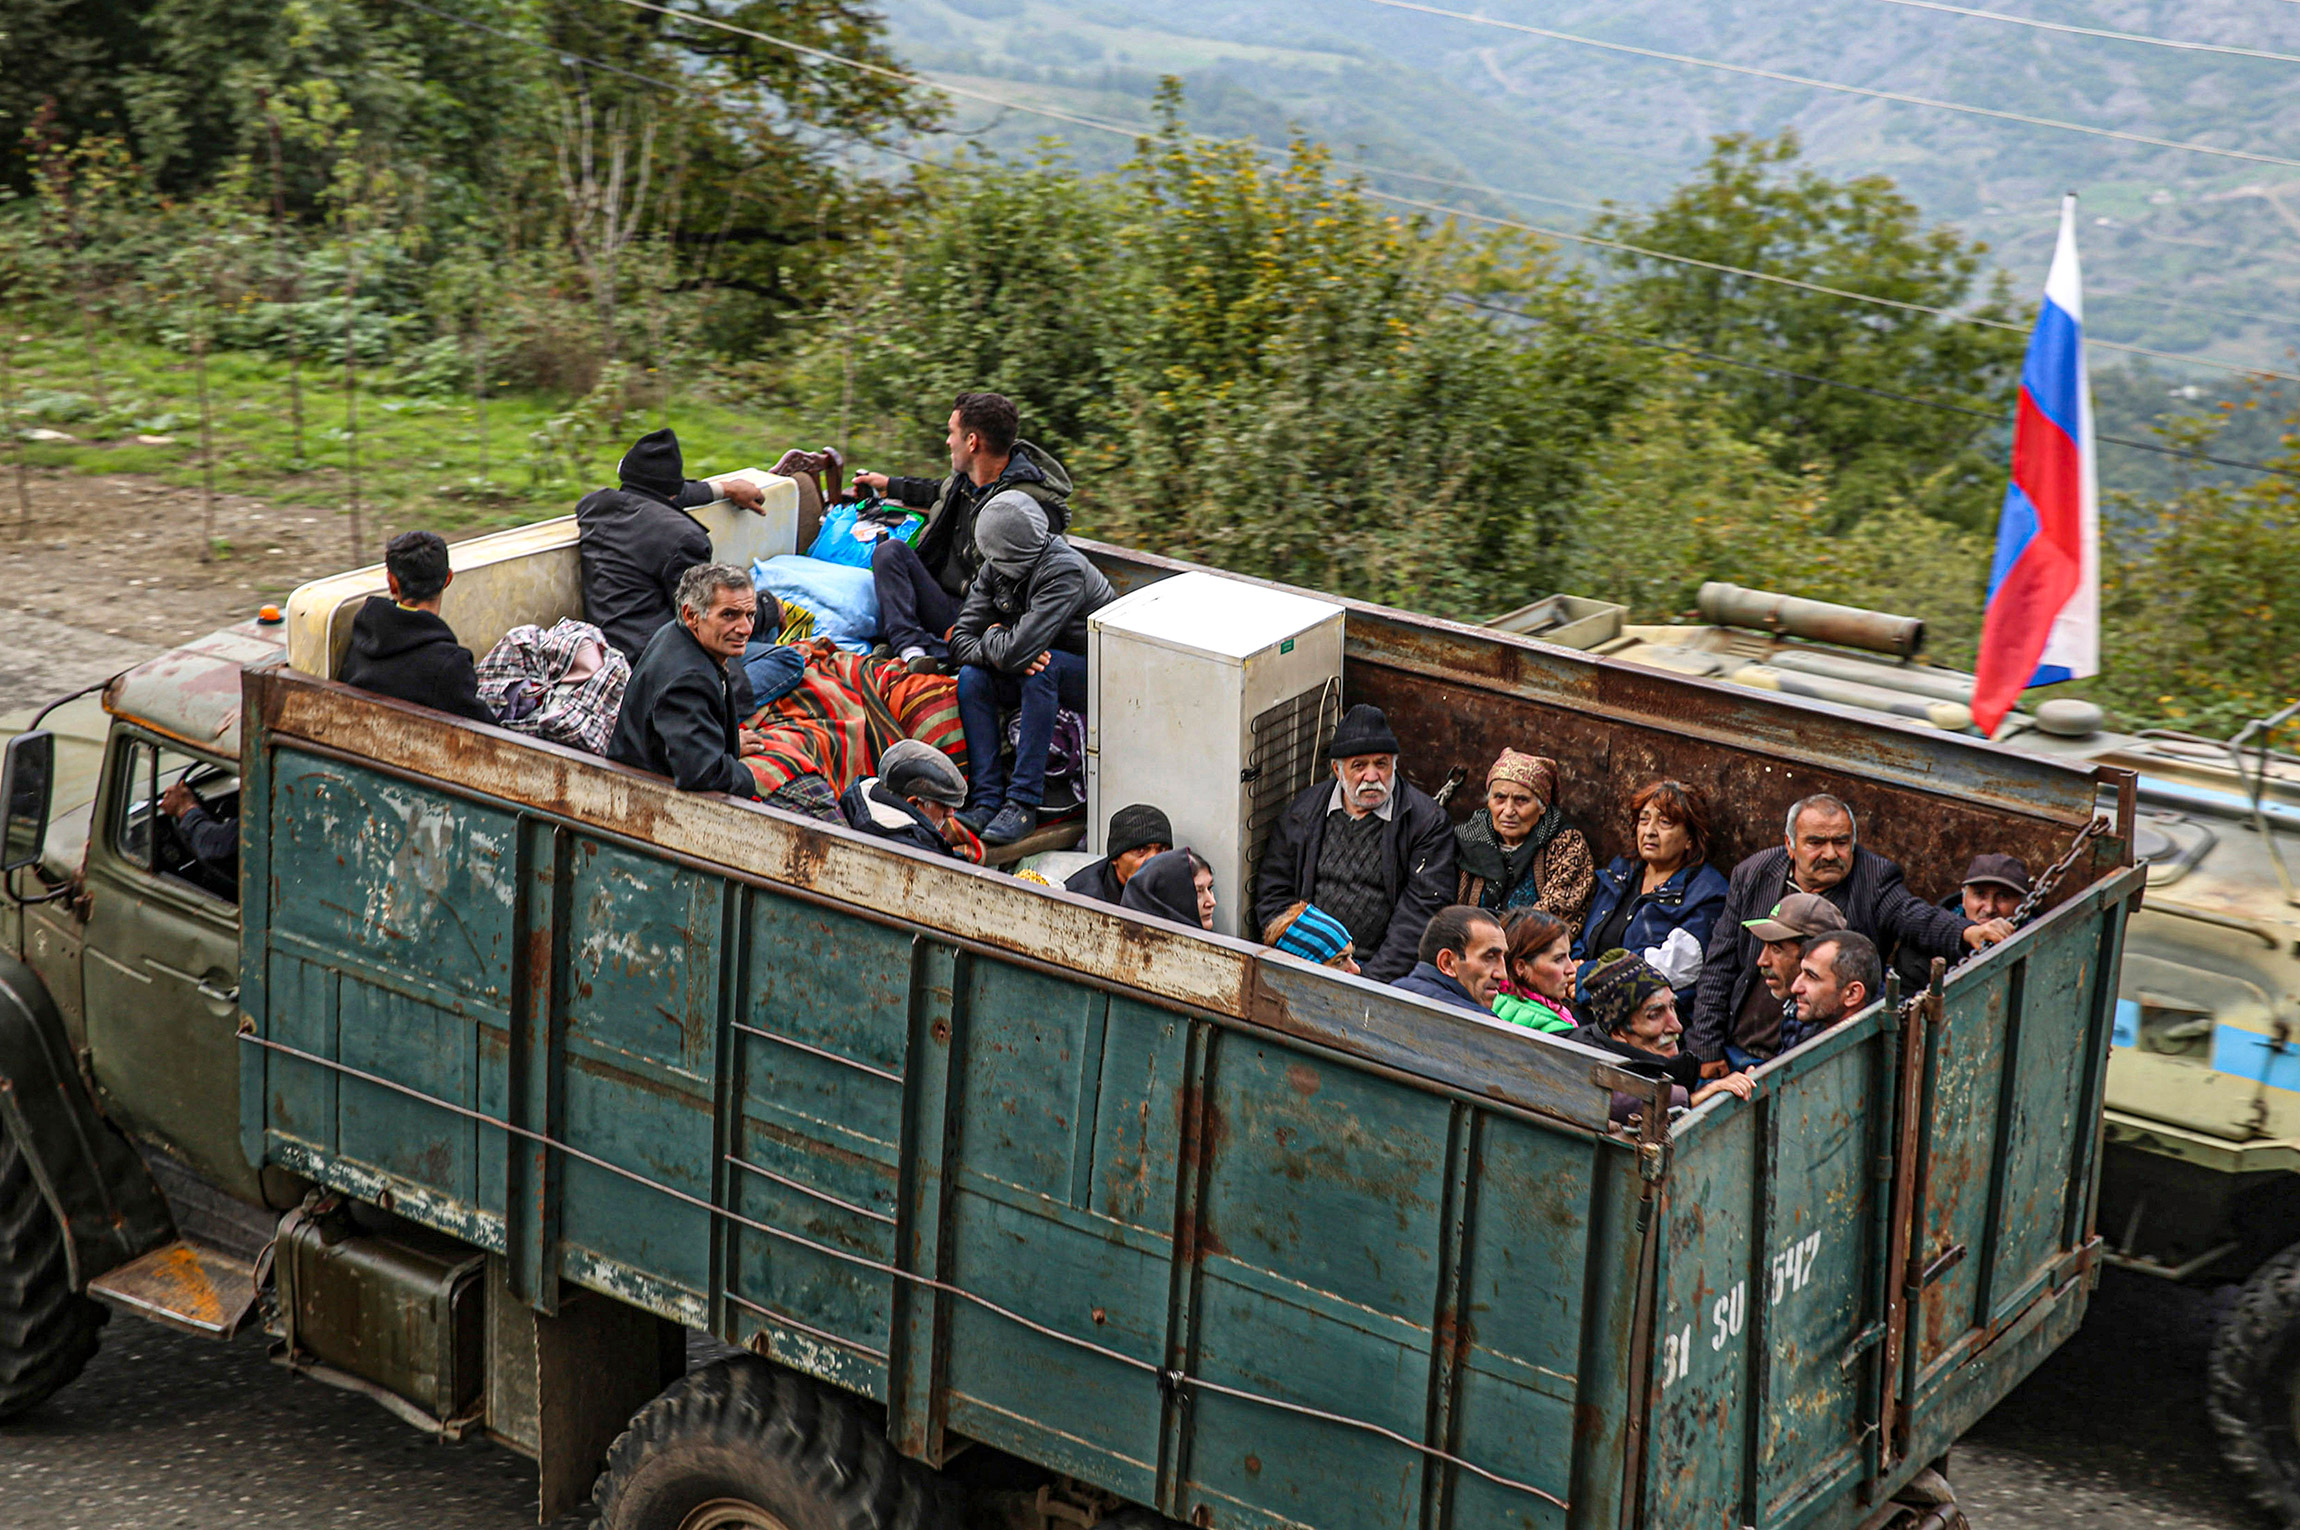 Беженцы из Нагорного Карабаха в районе города Лачин, 26 сентября.
&nbsp;